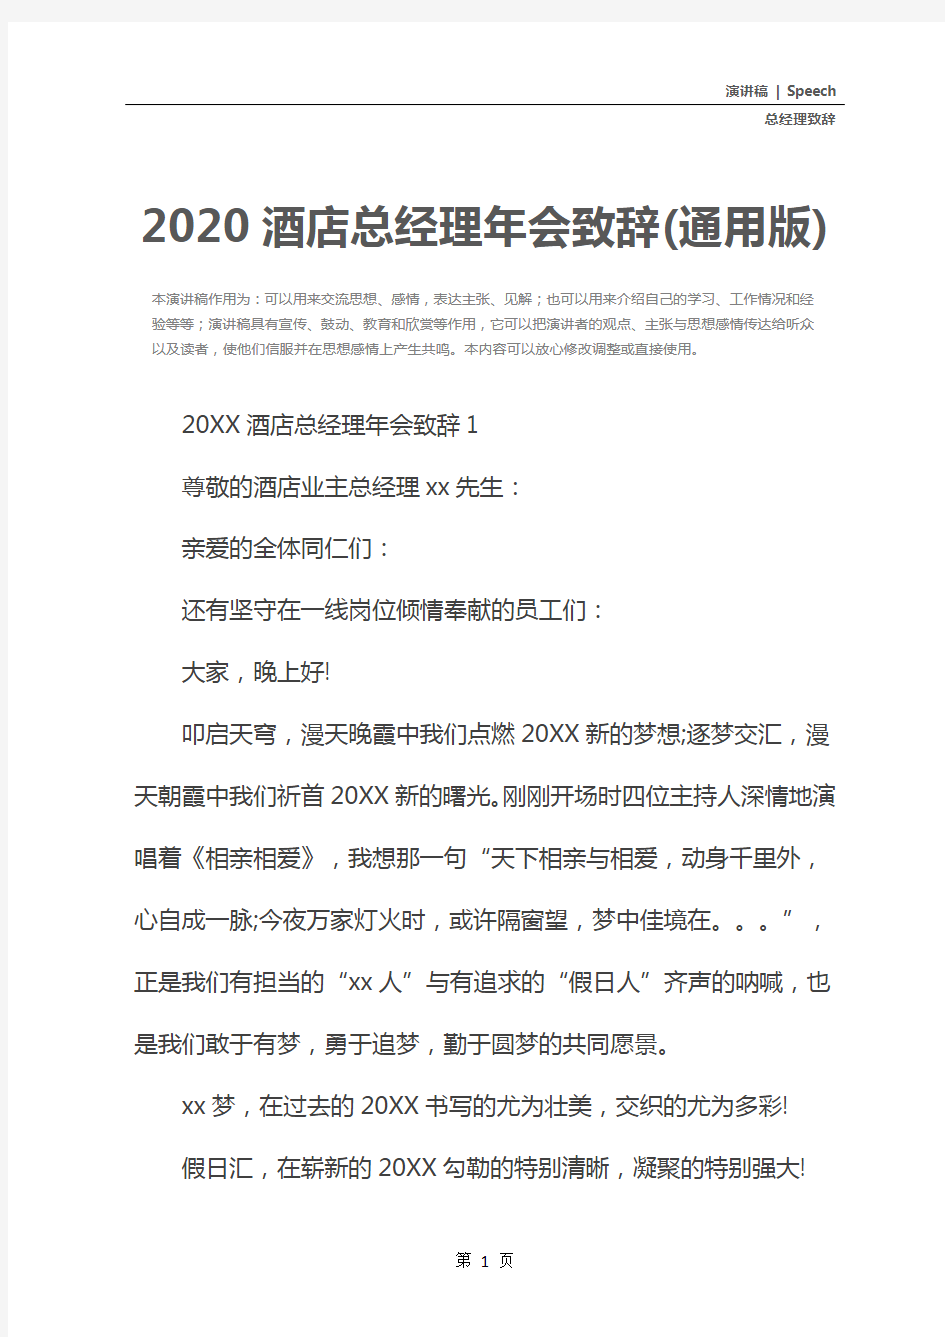 2020酒店总经理年会致辞(通用版)